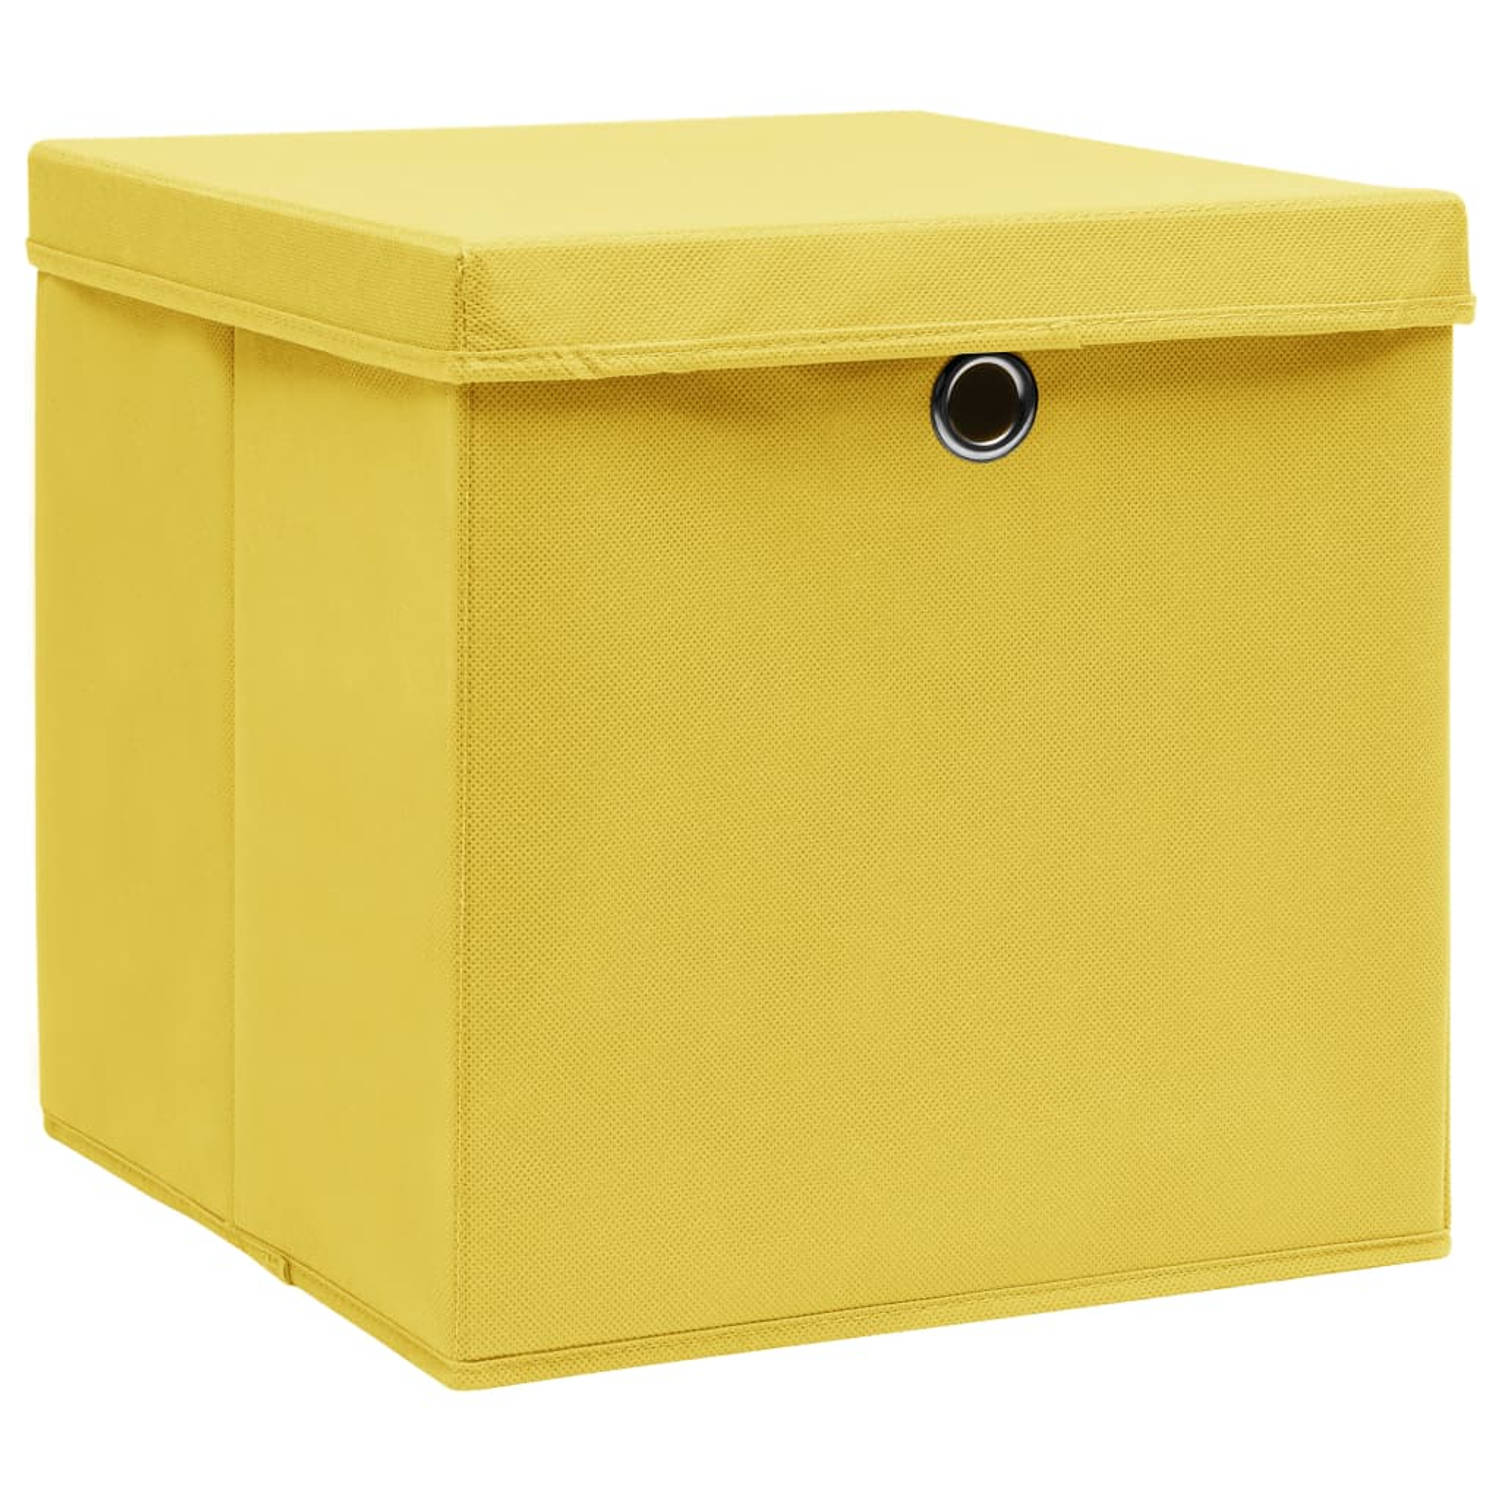 The Living Store Opbergboxen - geel nonwoven - 32x32x32 cm - inklapbaar - deksels - set van 1